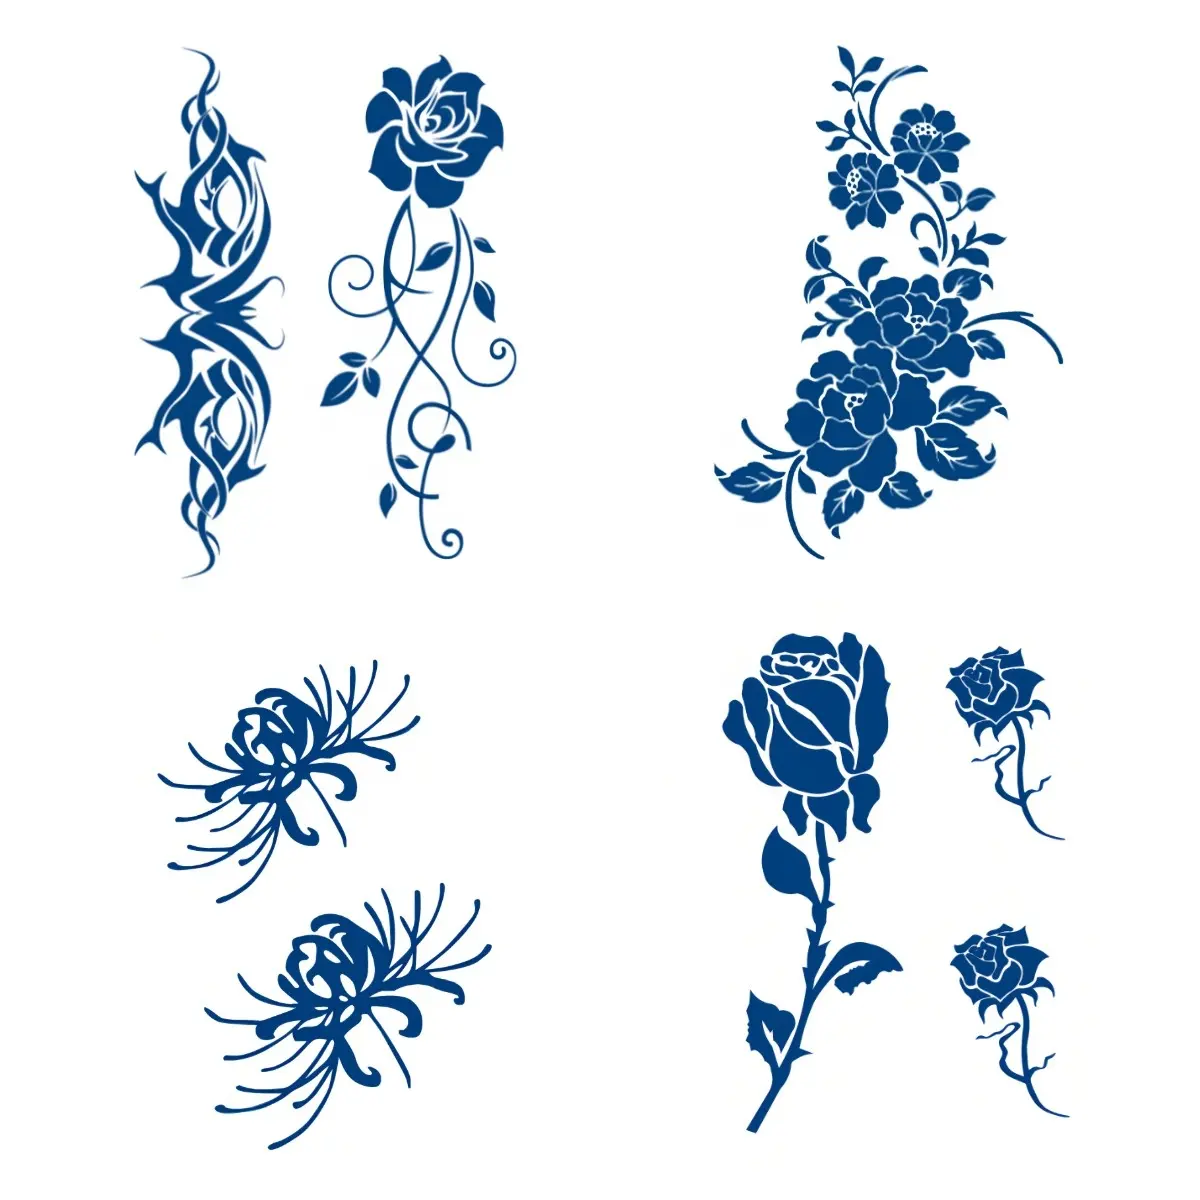 Campioni gratuiti adesivi per tatuaggi Semi permanenti disegni floreali tatuaggi temporanei